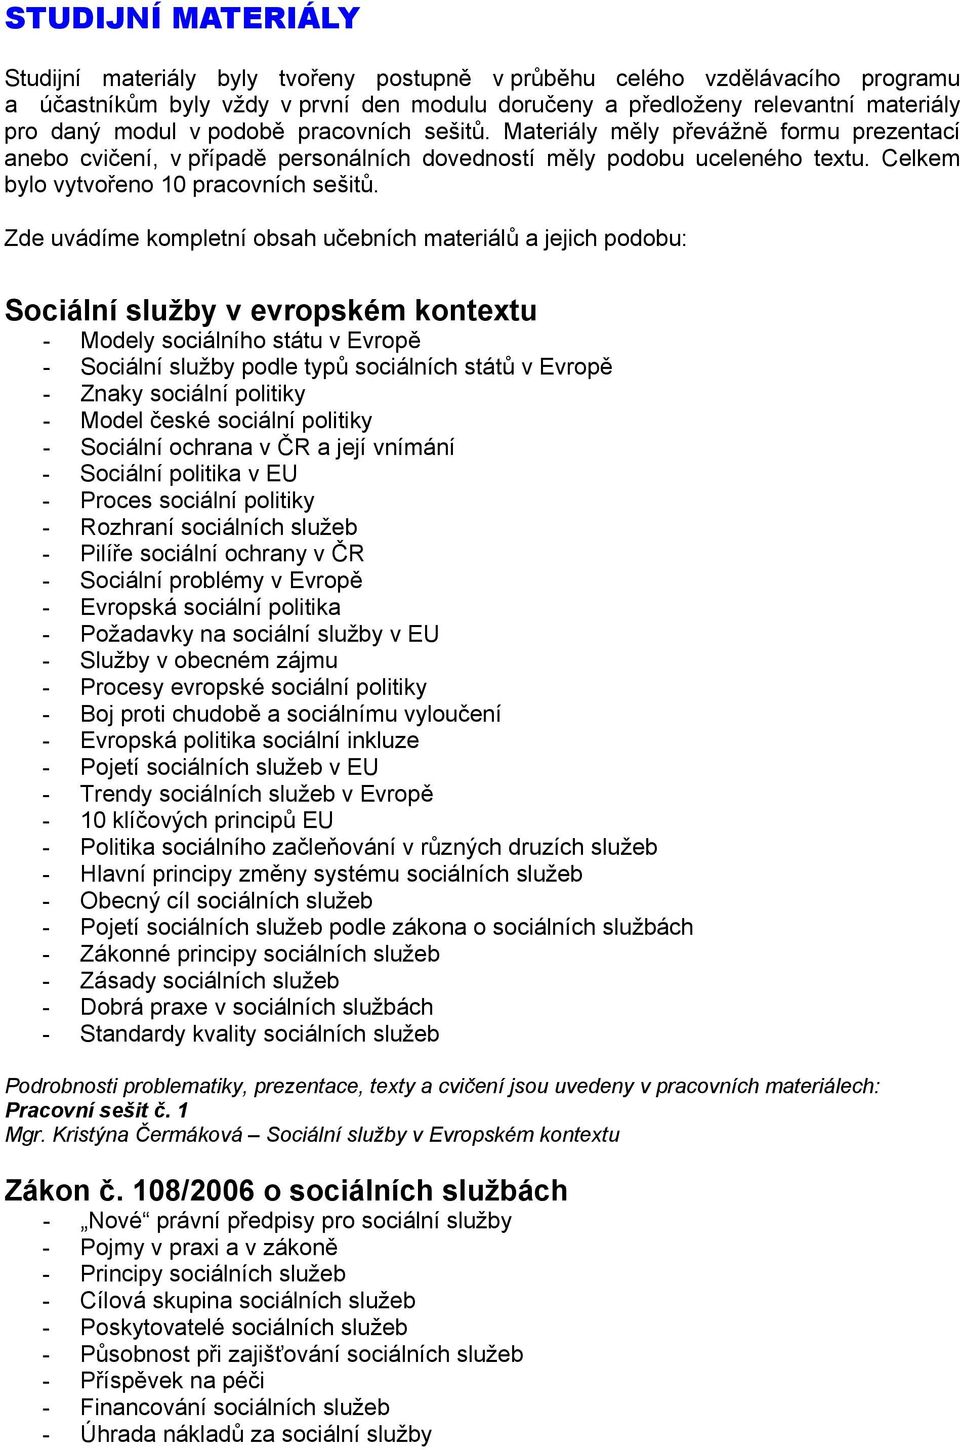 Zde uvádíme kompletní obsah učebních materiálů a jejich podobu: Sociální služby v evropském kontextu - Modely sociálního státu v Evropě - Sociální služby podle typů sociálních států v Evropě - Znaky